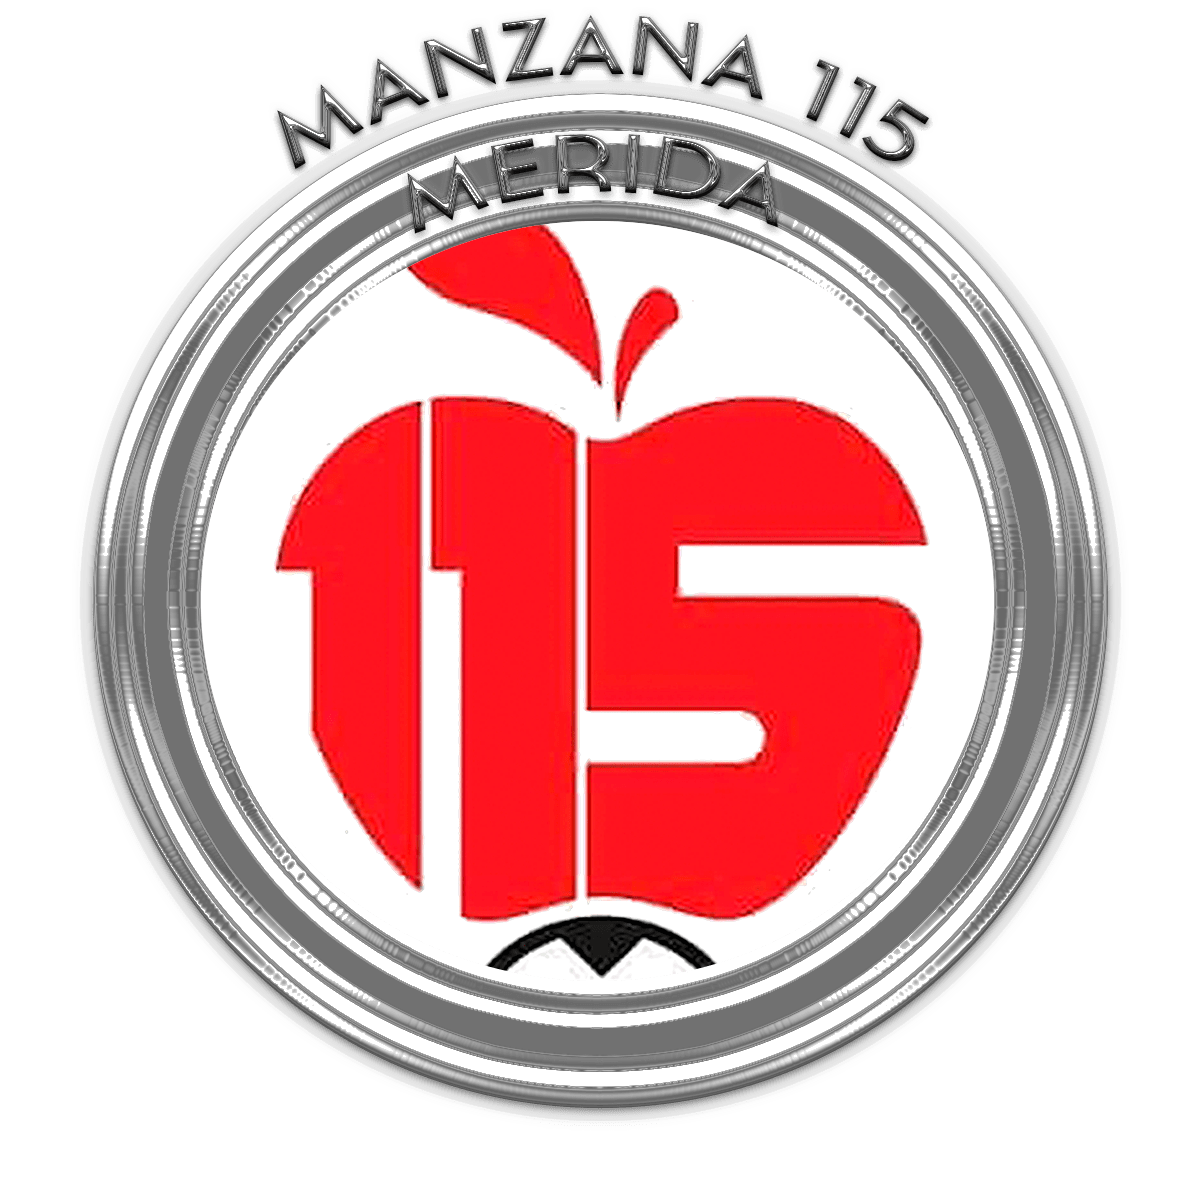 Manzana 115